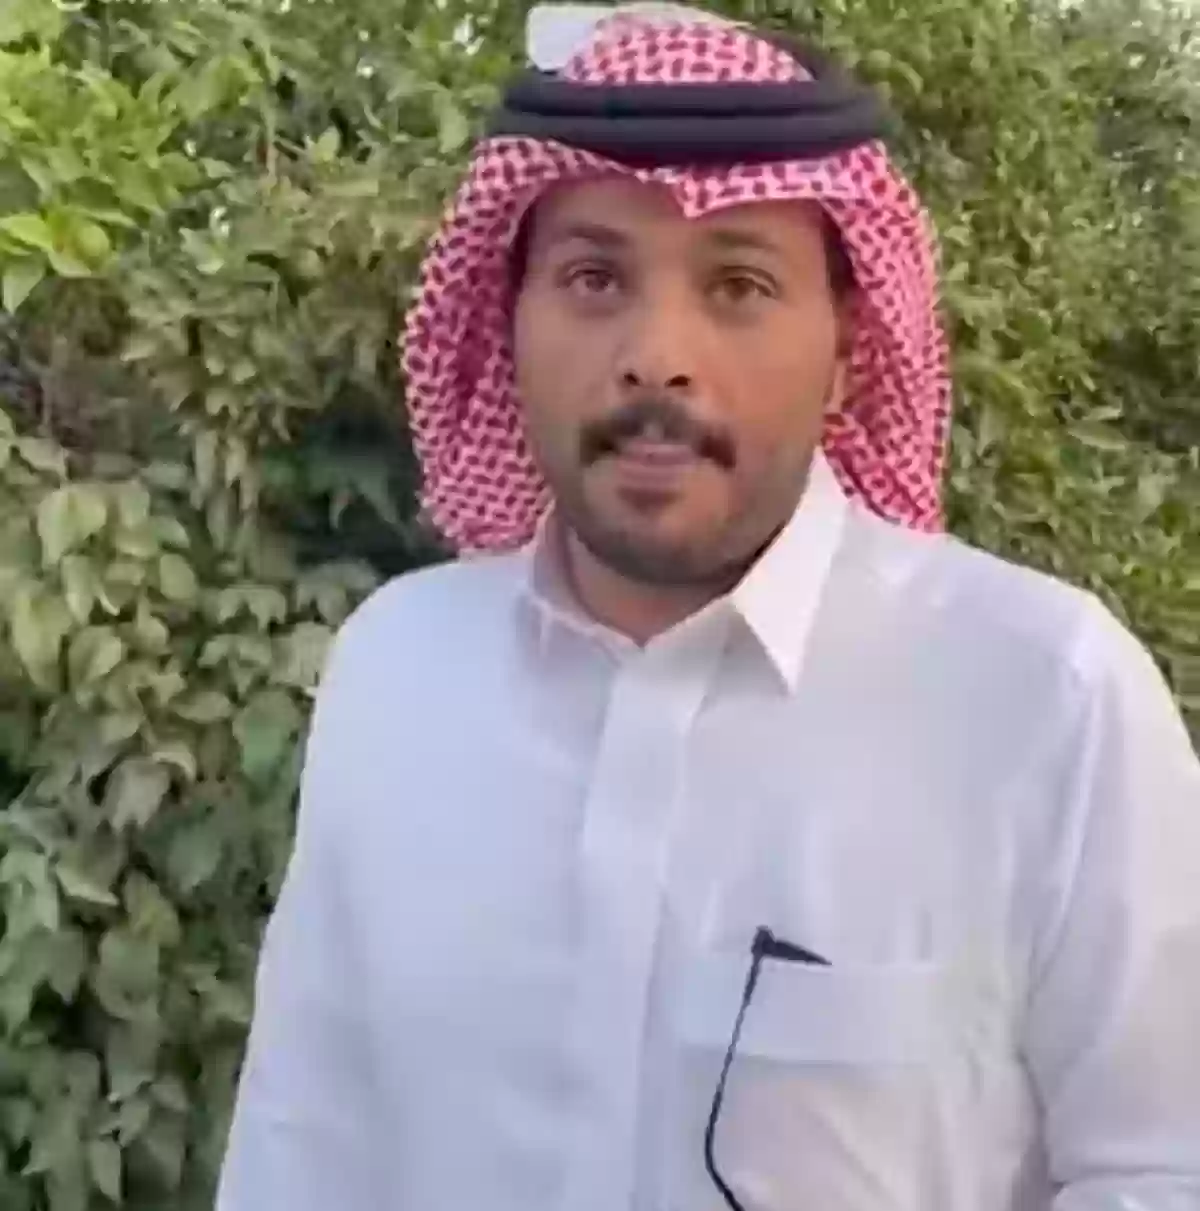  سعودي يوضح أثر وفاة والده على الإبل وإنتاج المزرعة